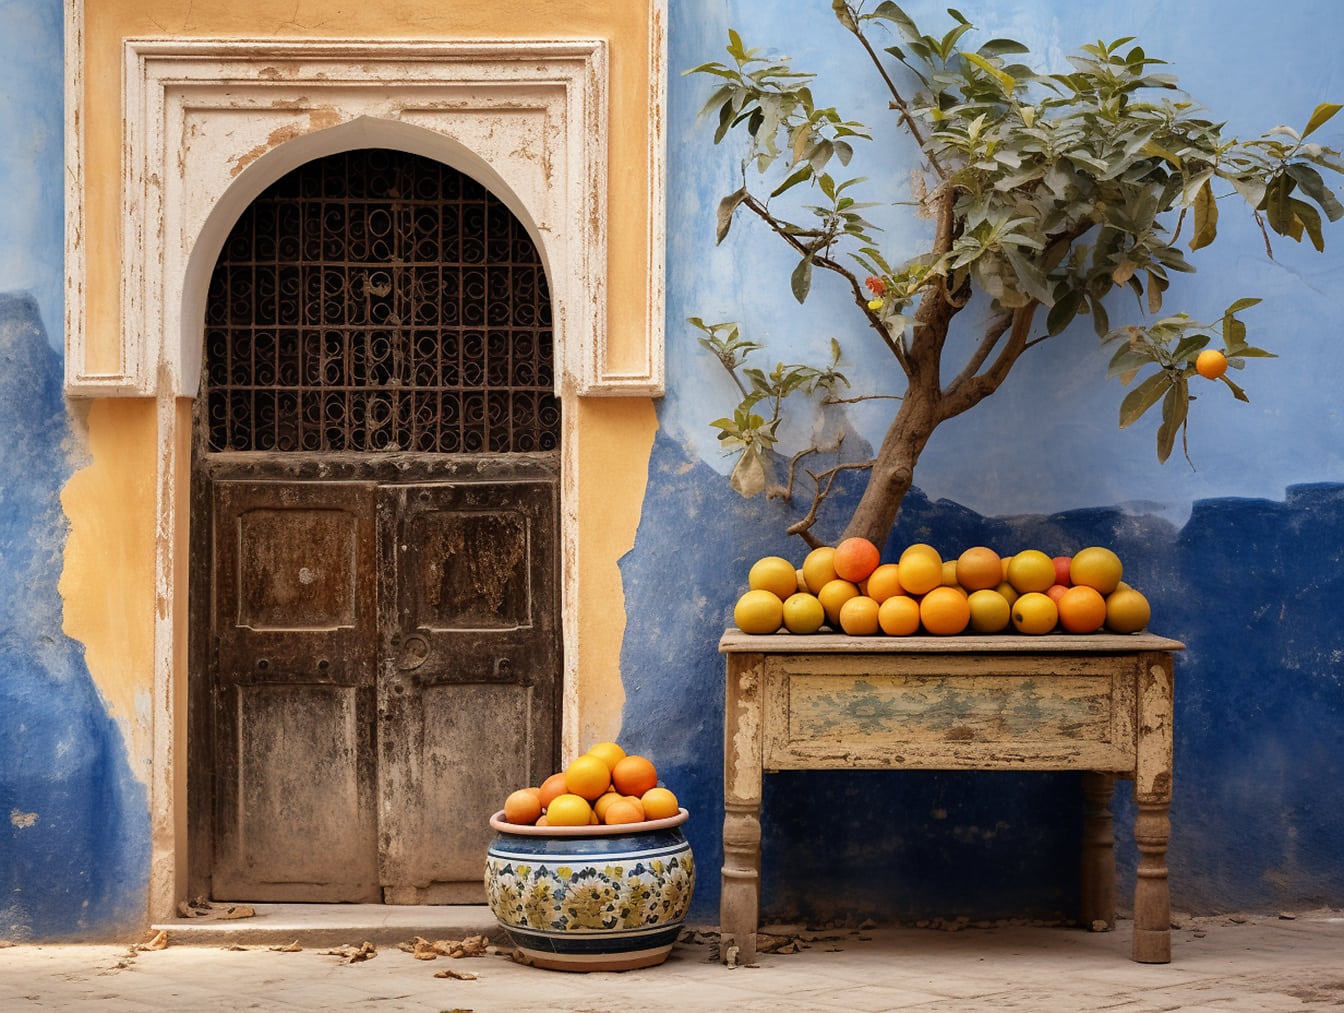 Mesa con naranjas frente a una pared azul en Marruecos